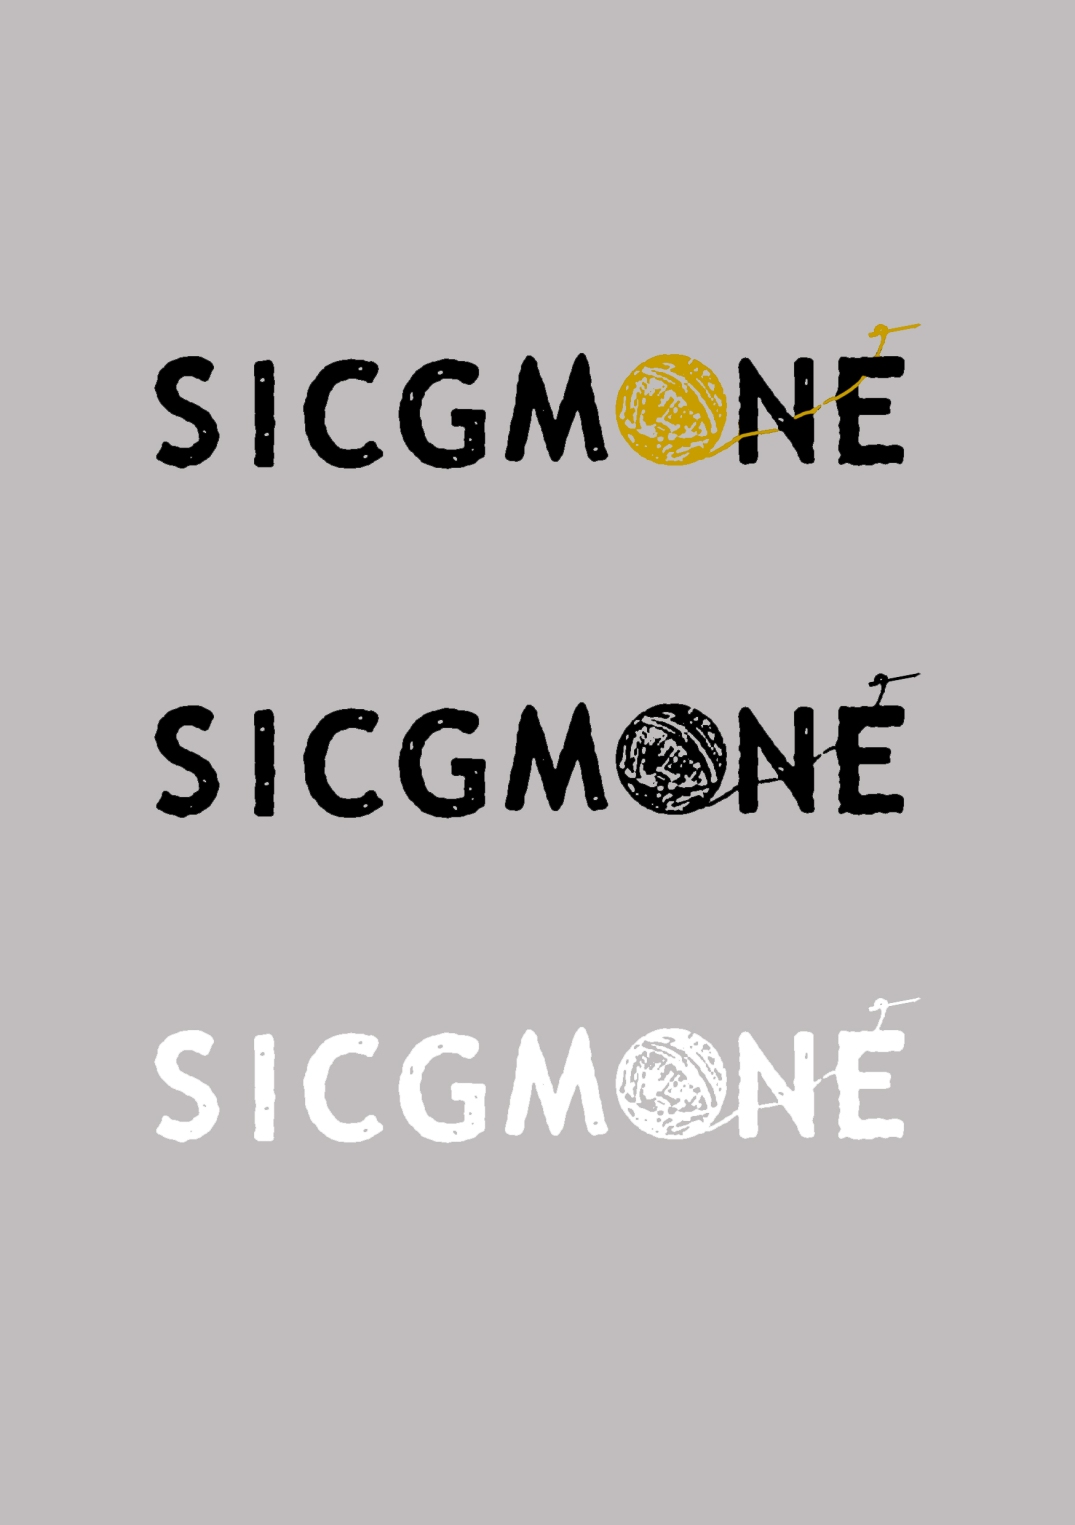 Sicgmone, 2016